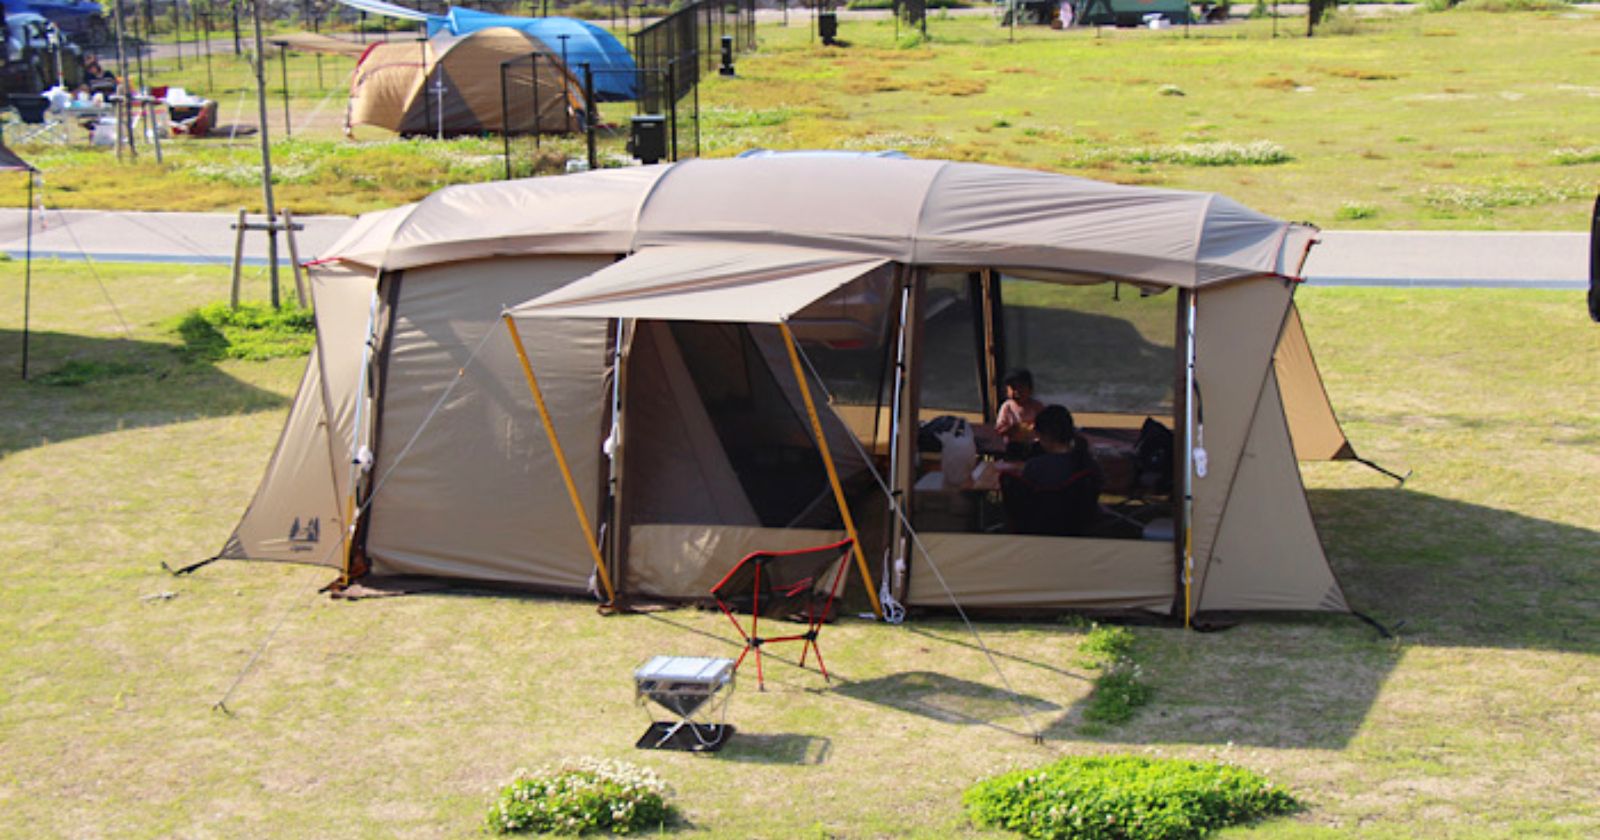 キャンパルジャパン アポロン テント(5人用アーチ型テント)